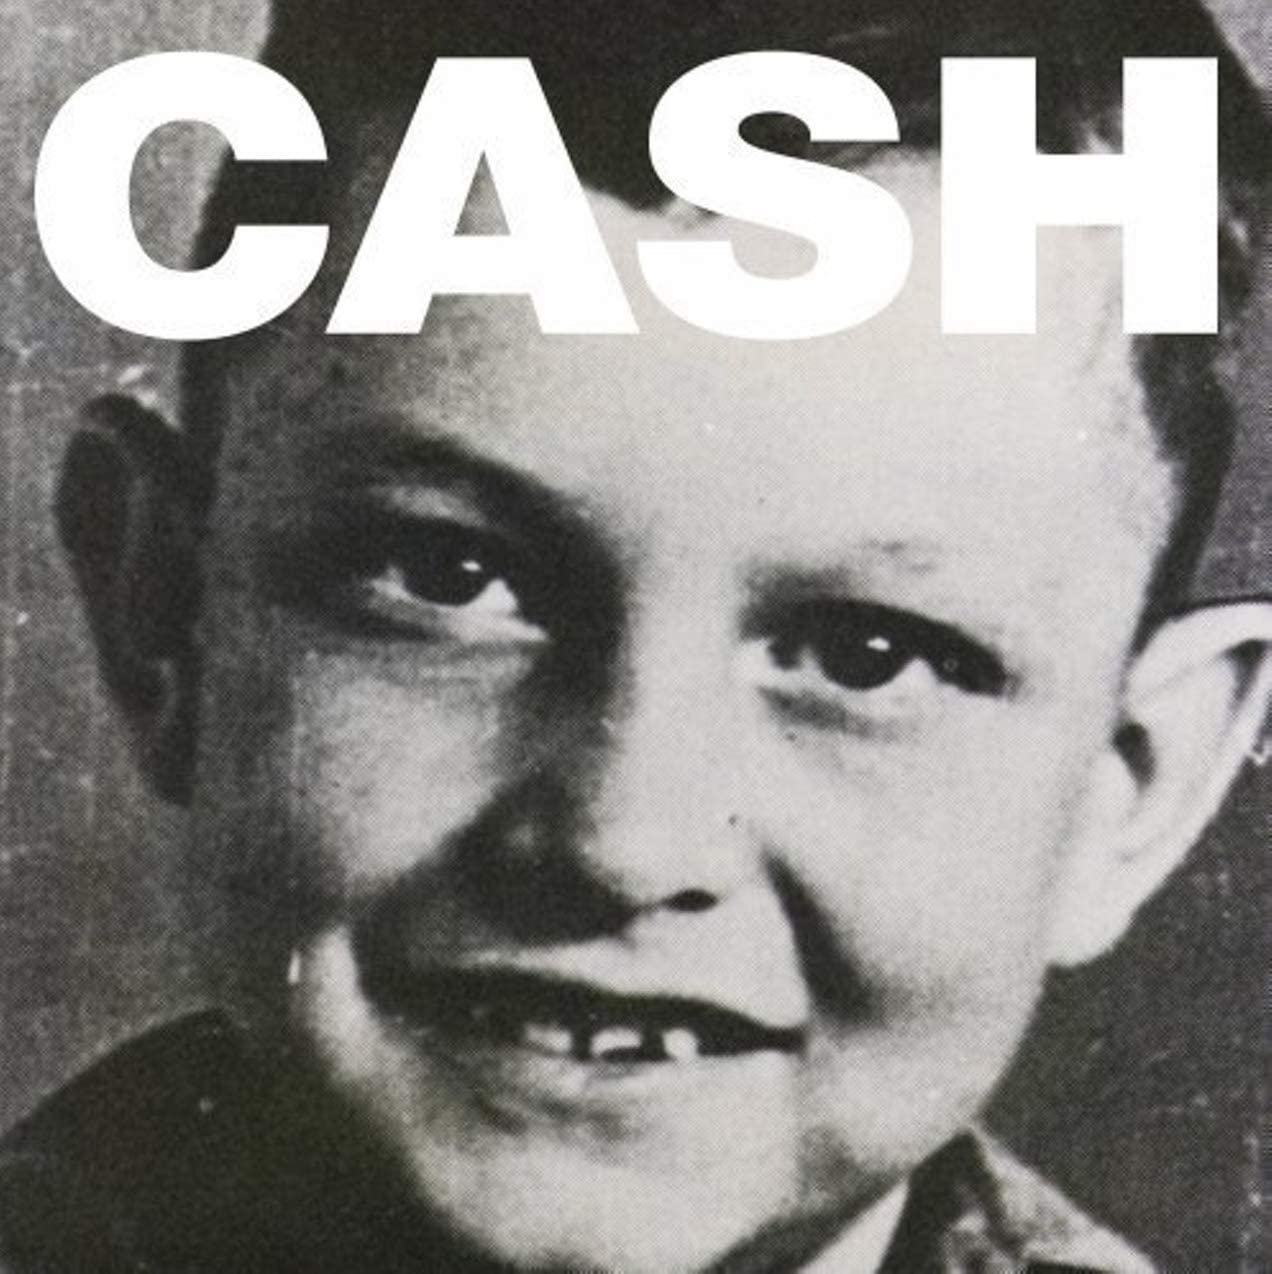 Johnny Cash – American VI: Ain’t No Grave cover album